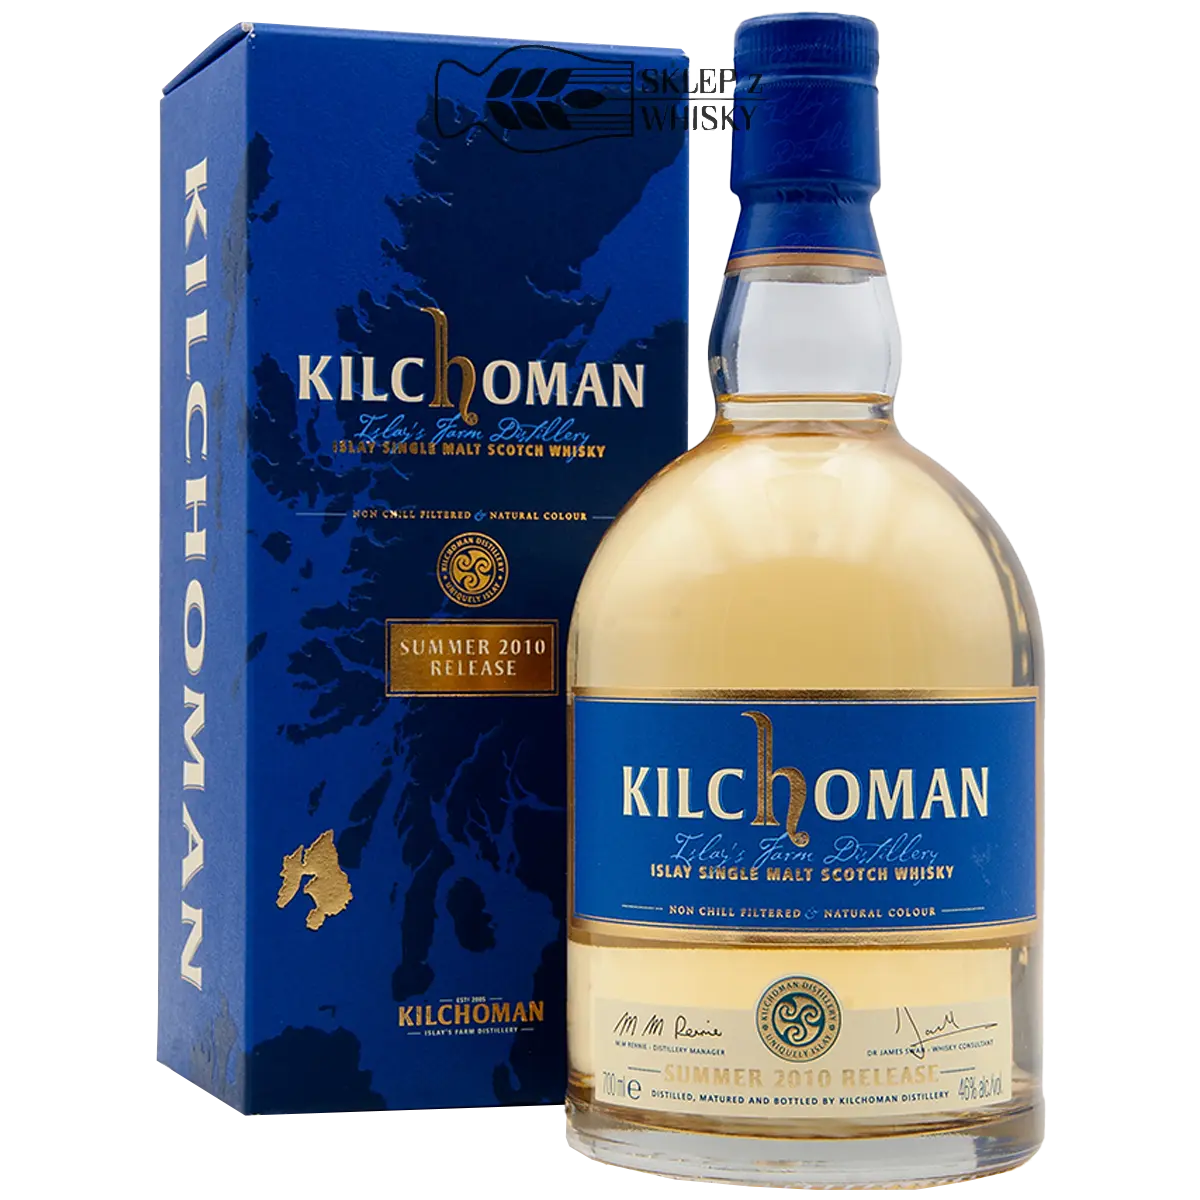 Kilchoman Summer 2010 Release - szkocka whisky single malt z regionu Islay, 700 ml, w pudełku